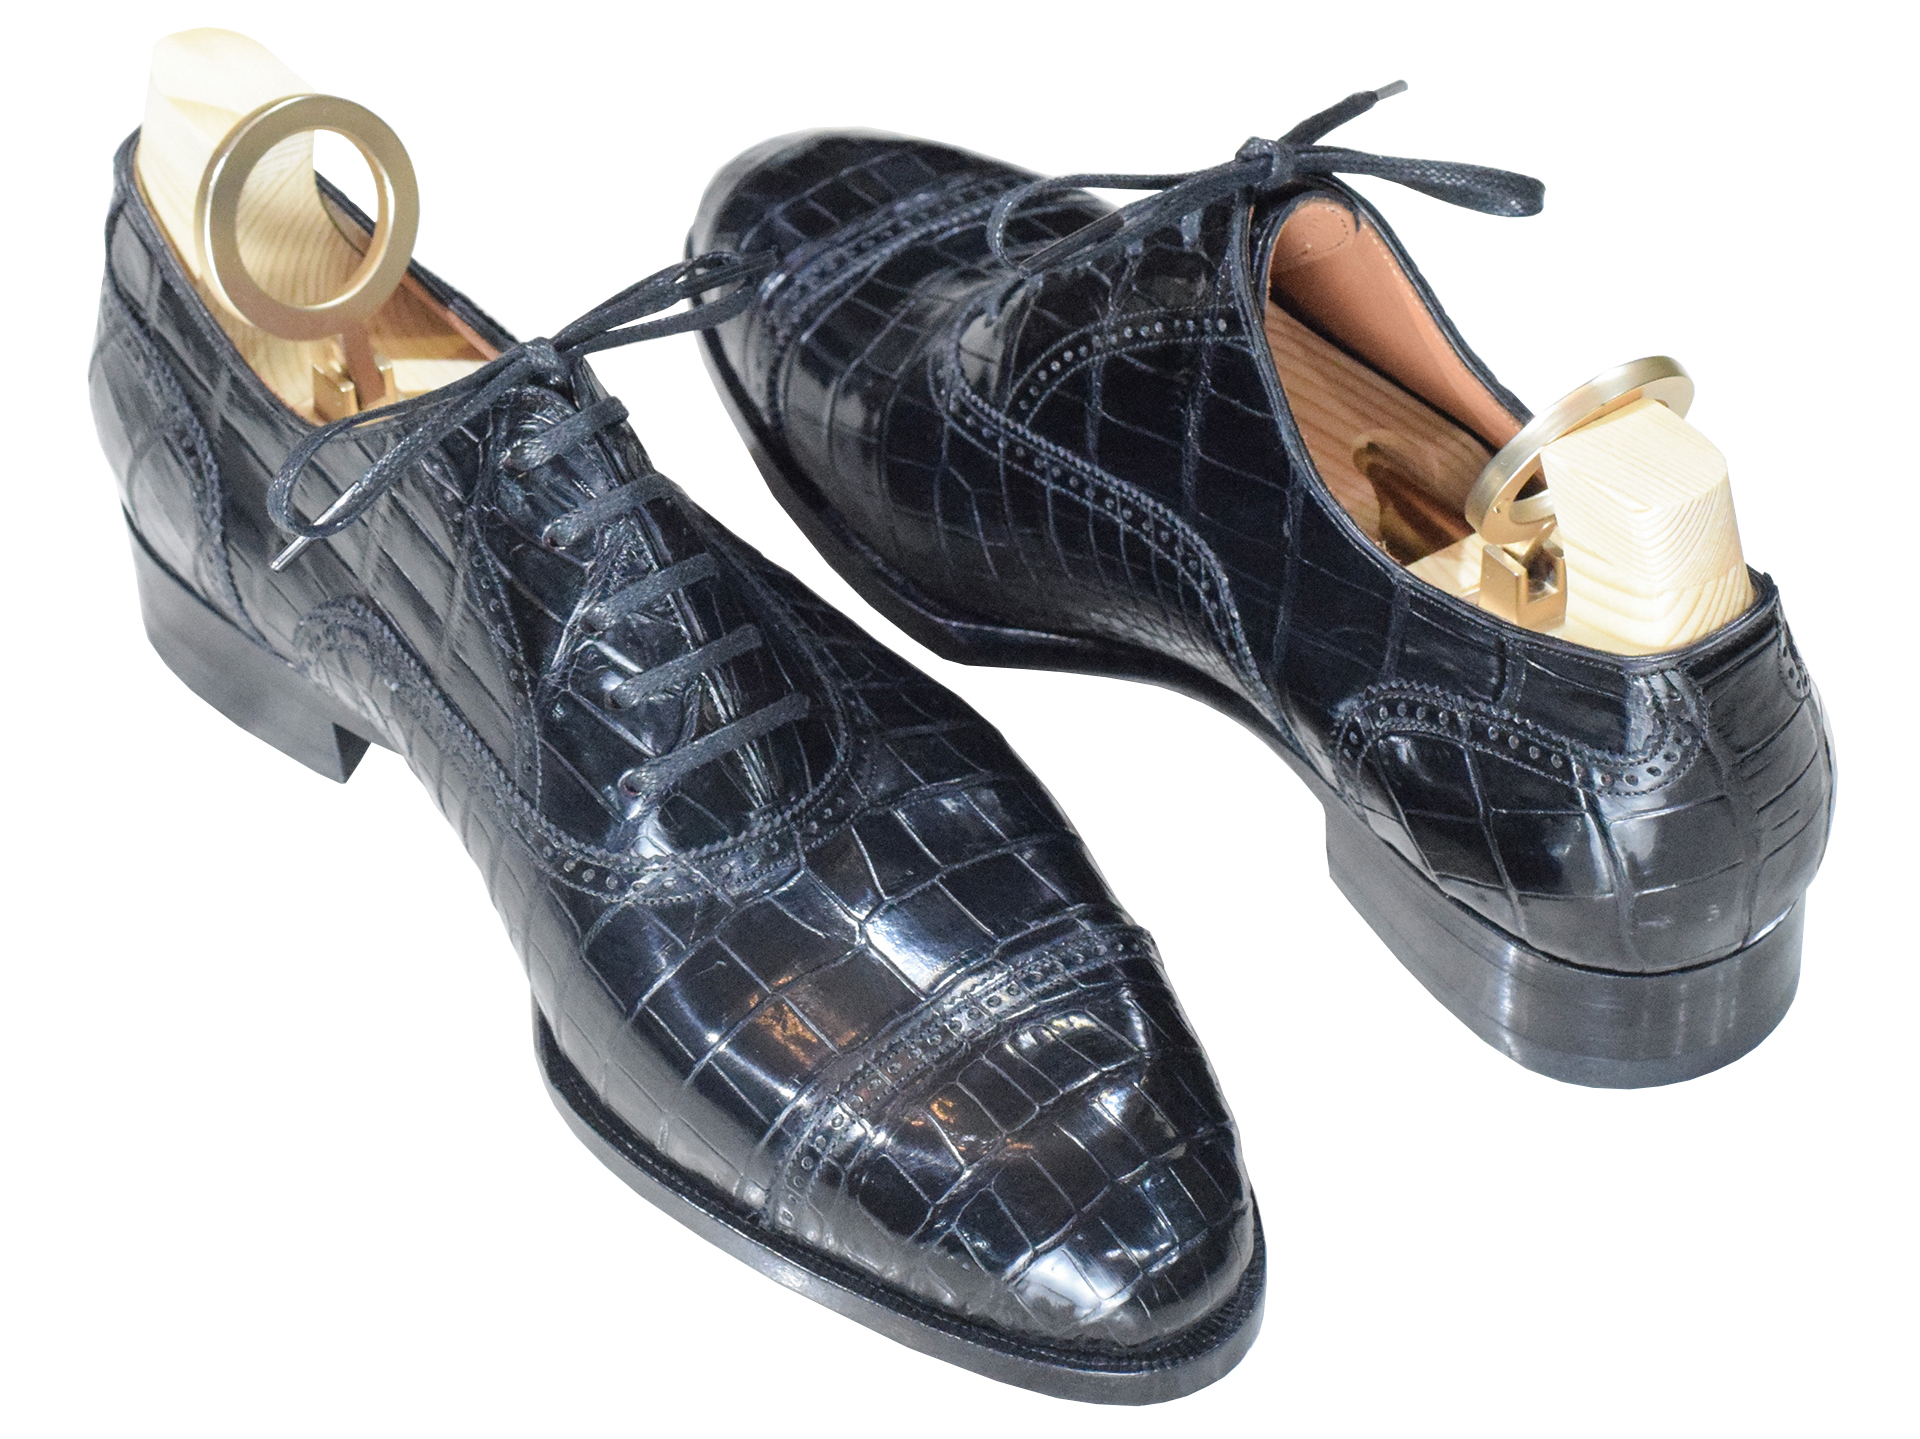 MTO Oxford captoe semi brogue shoes - Crocodile leather